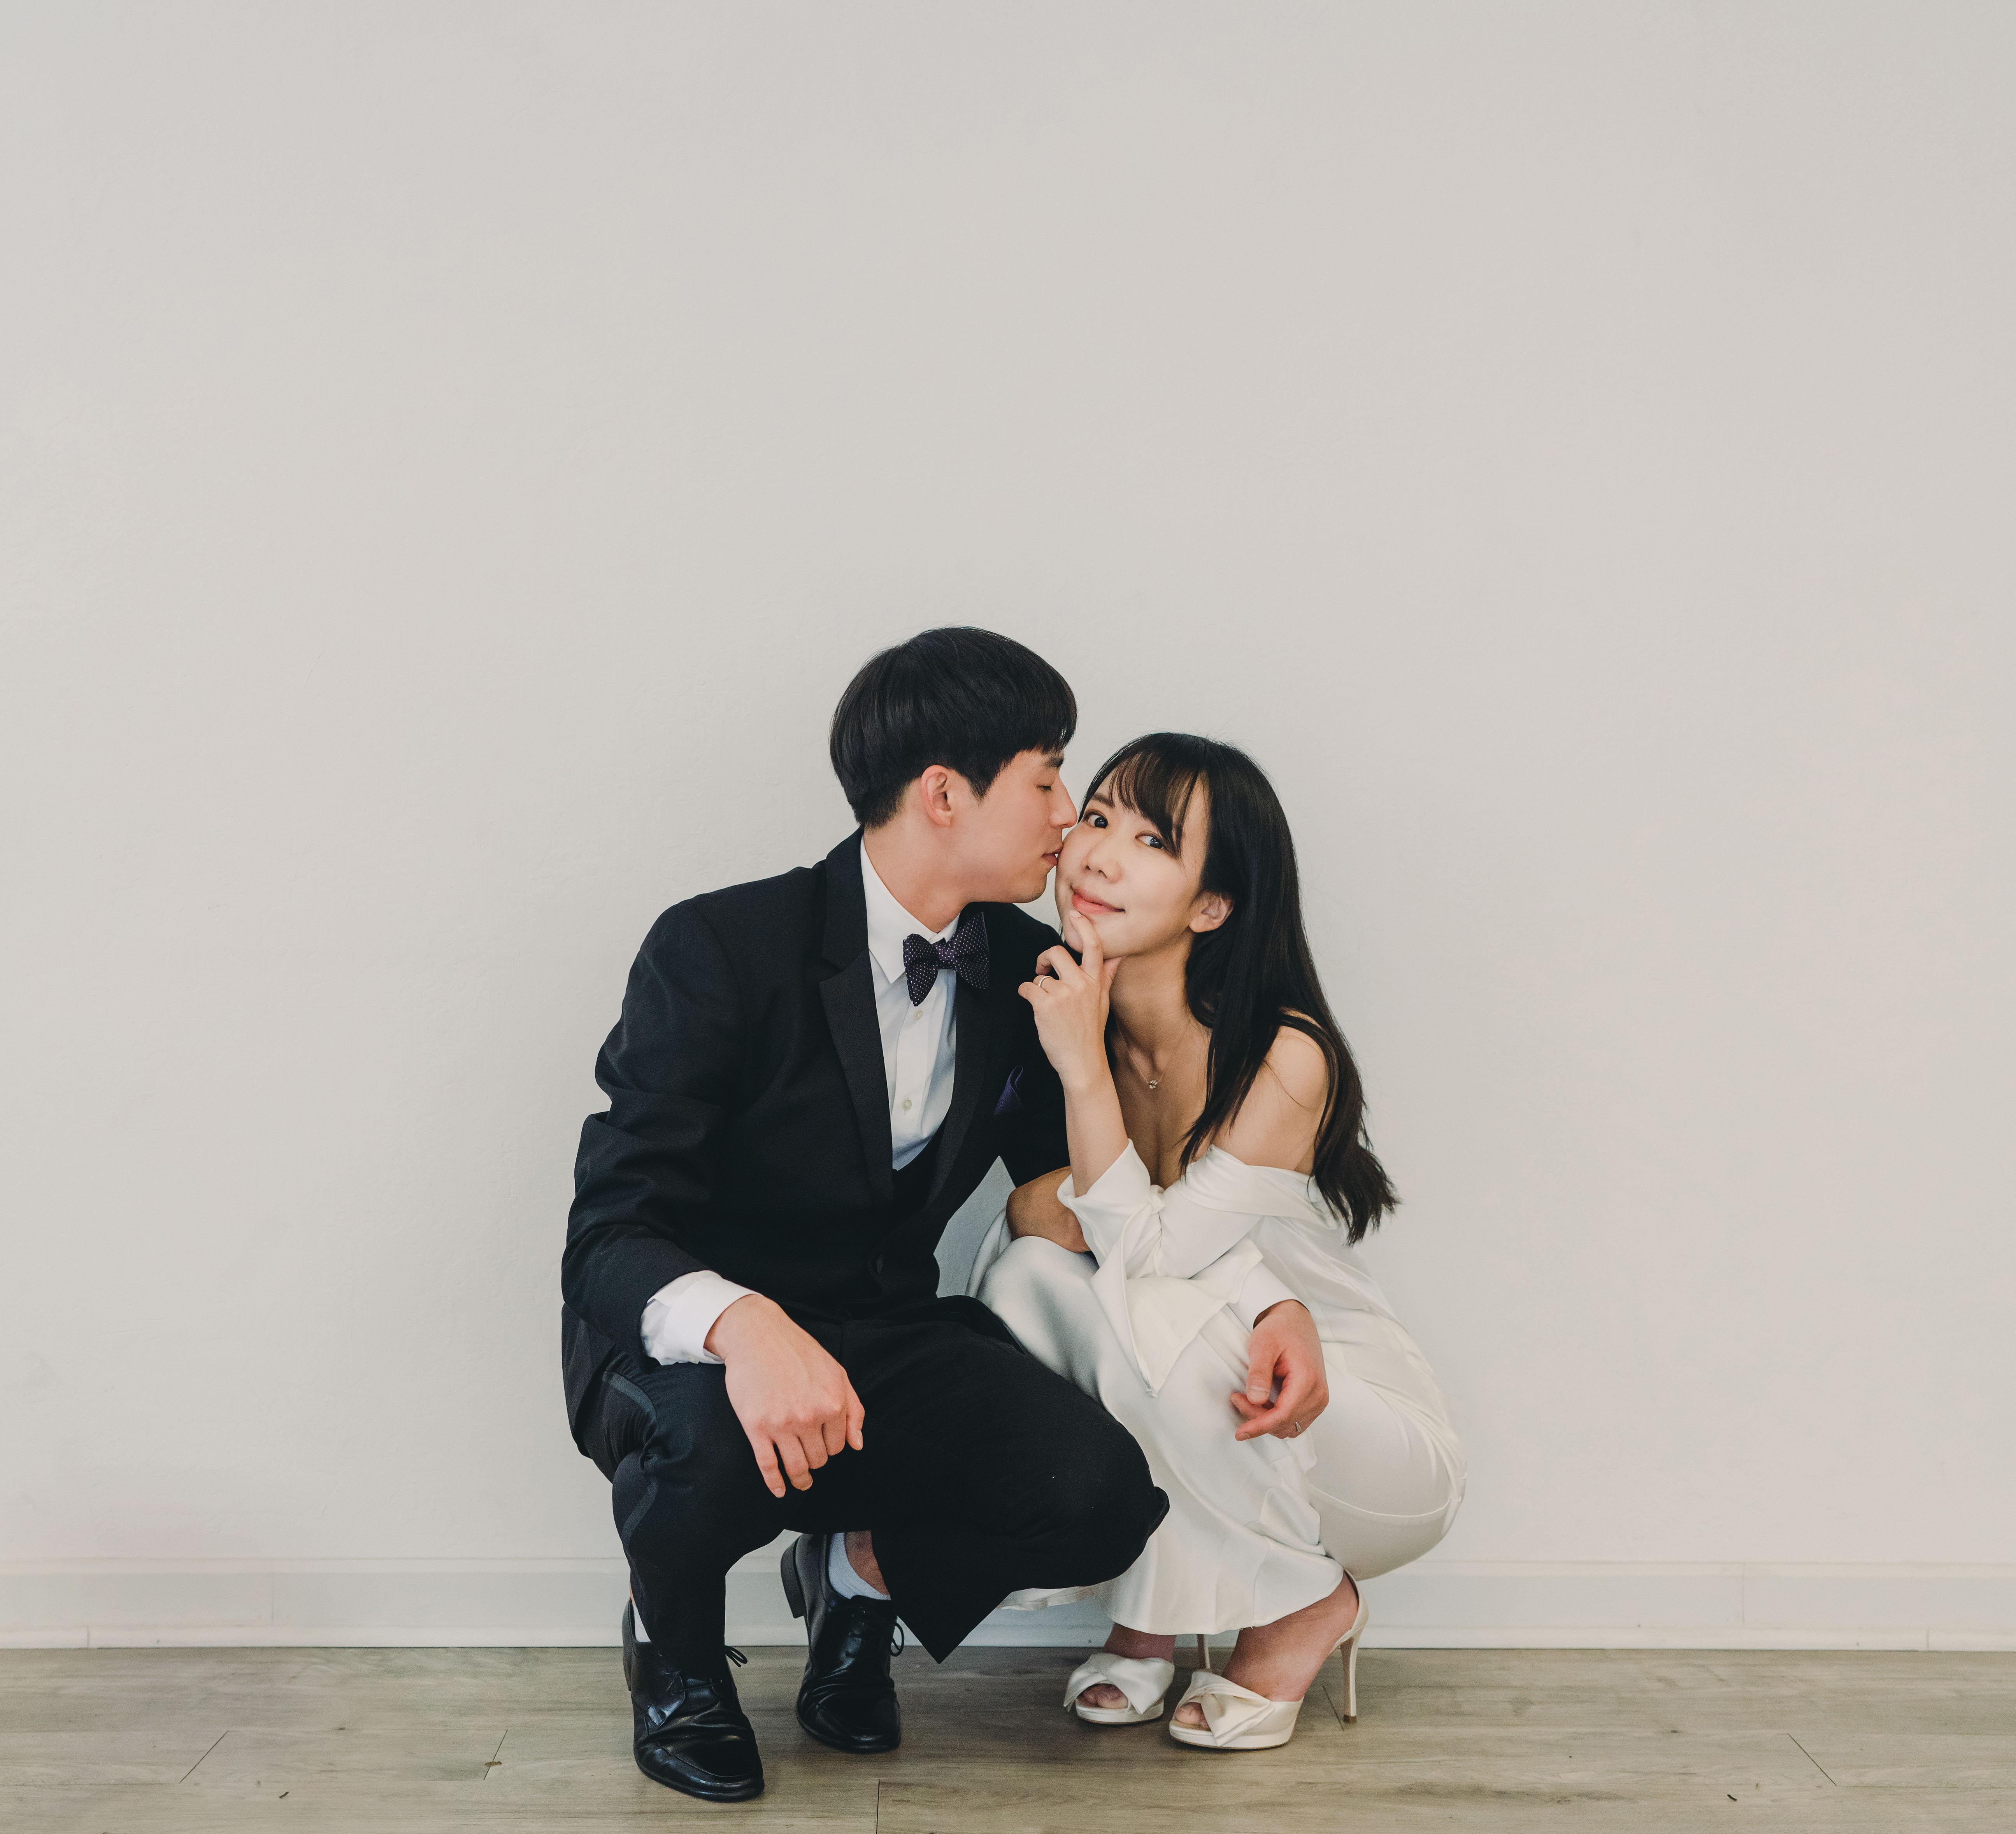 The Wedding Website of Eunji You and Jungsik Kim